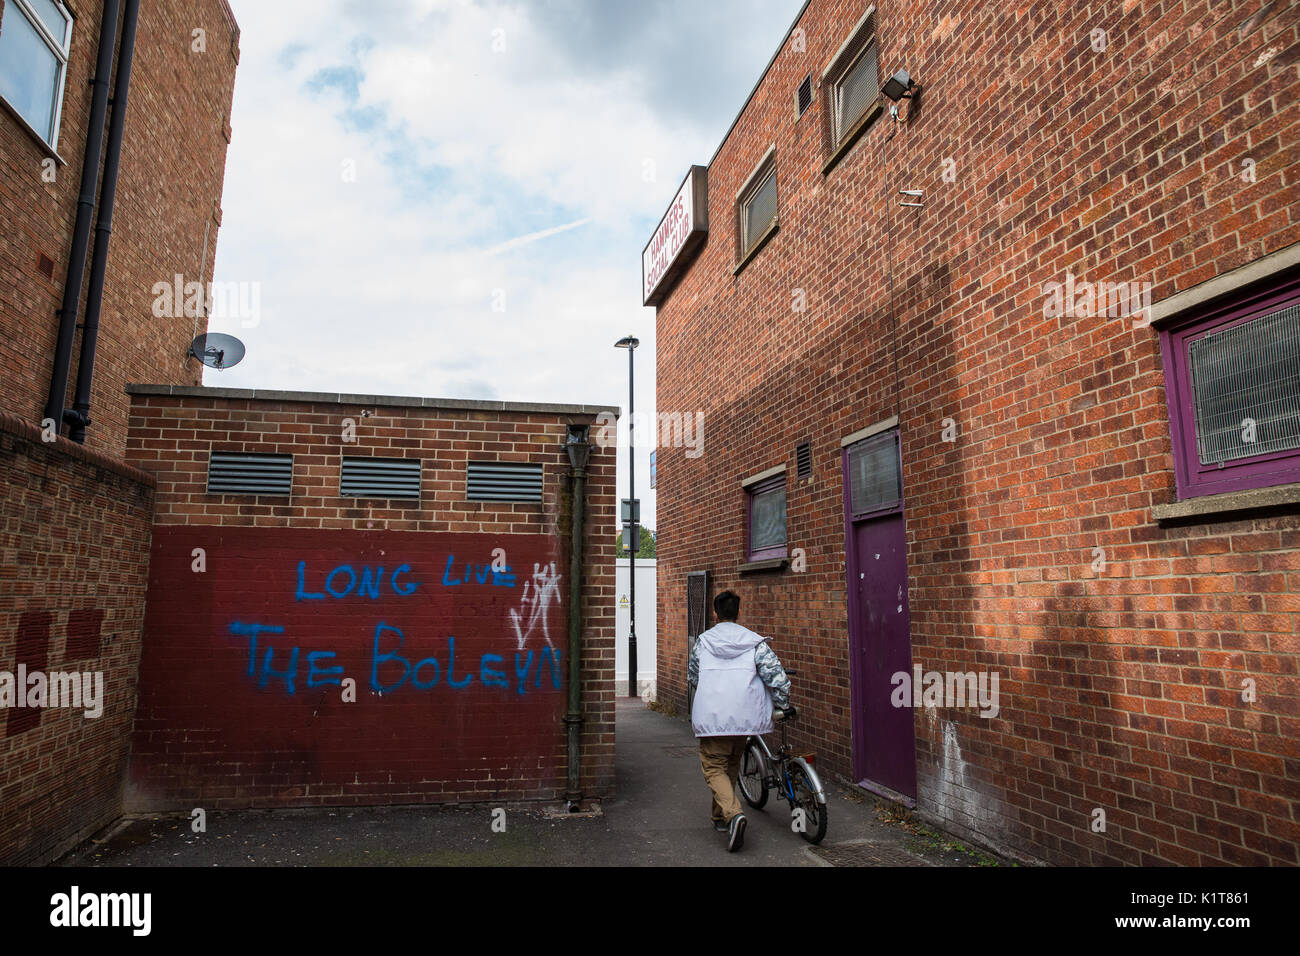 Londres, Royaume-Uni. 24 août 2017. 'Vive le Boleyn graffiti' près de l'emplacement de l'Boleyn Ground, West Ham United, l'ancien stade d'Upton Park. Banque D'Images